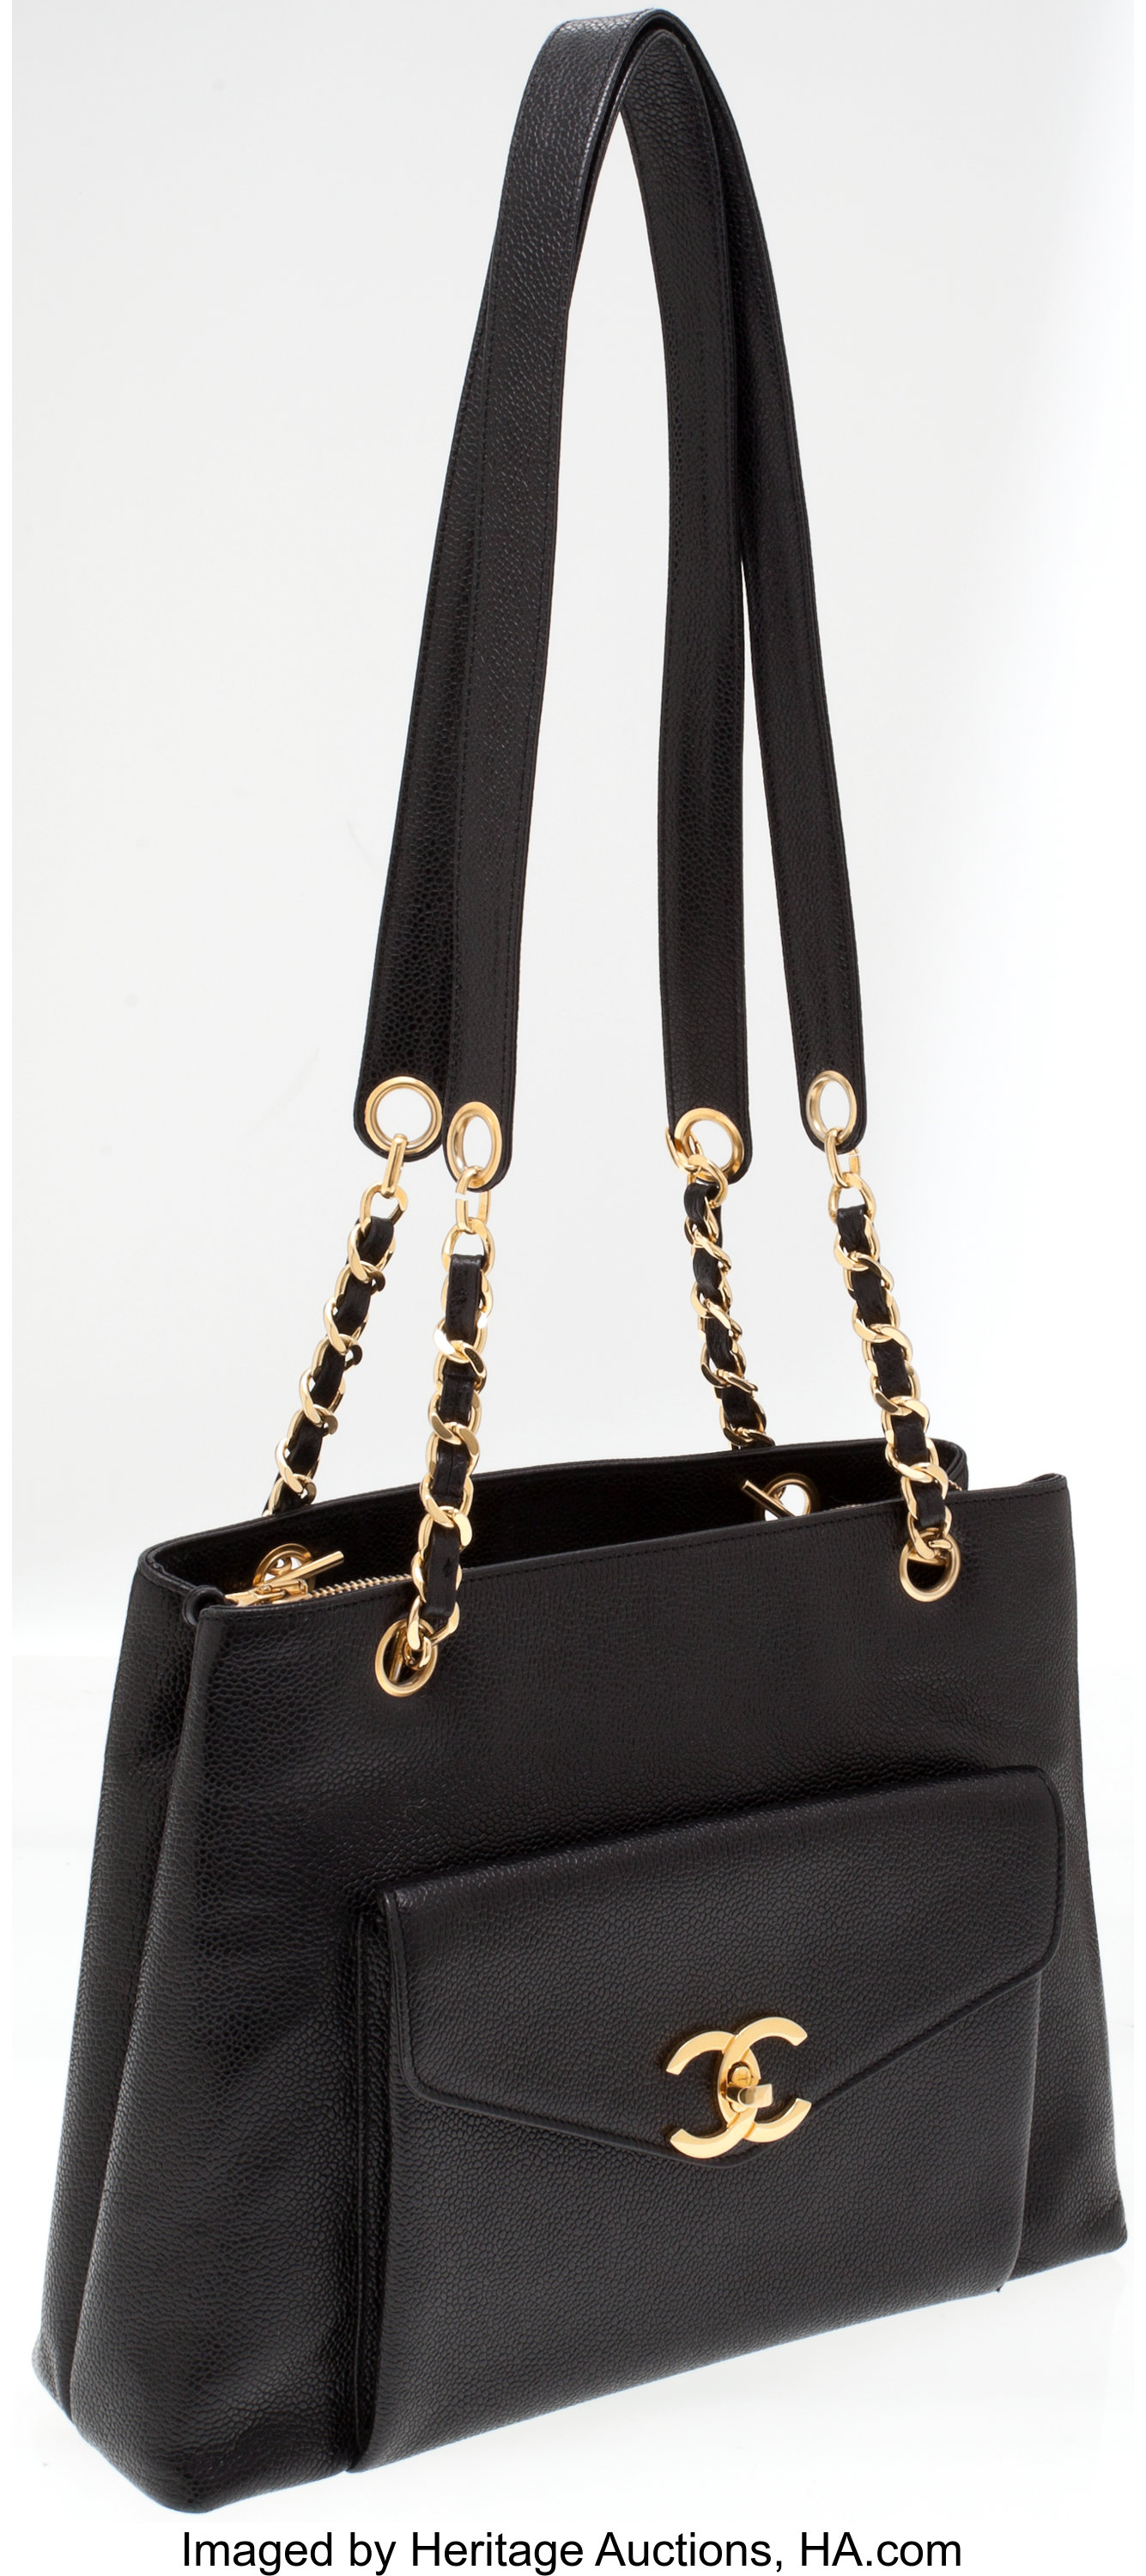 Chanel Black Caviar Leather Turnlock Pocket Shoulder Bag with Gold